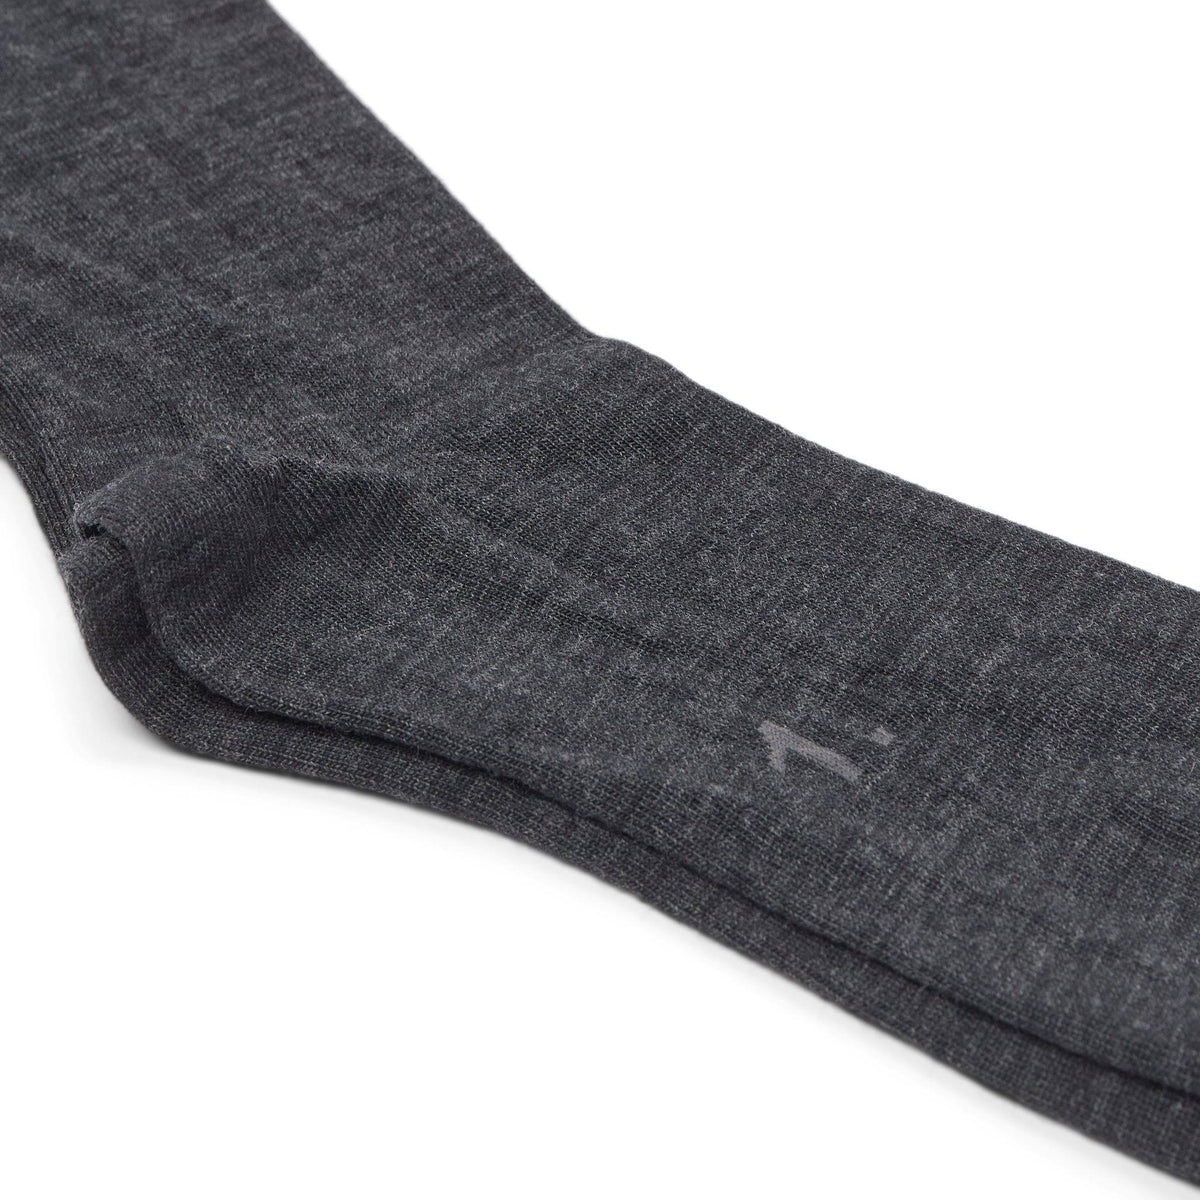 10socks – Mørkegrå sokker – 10Socks sokker – Sumisura